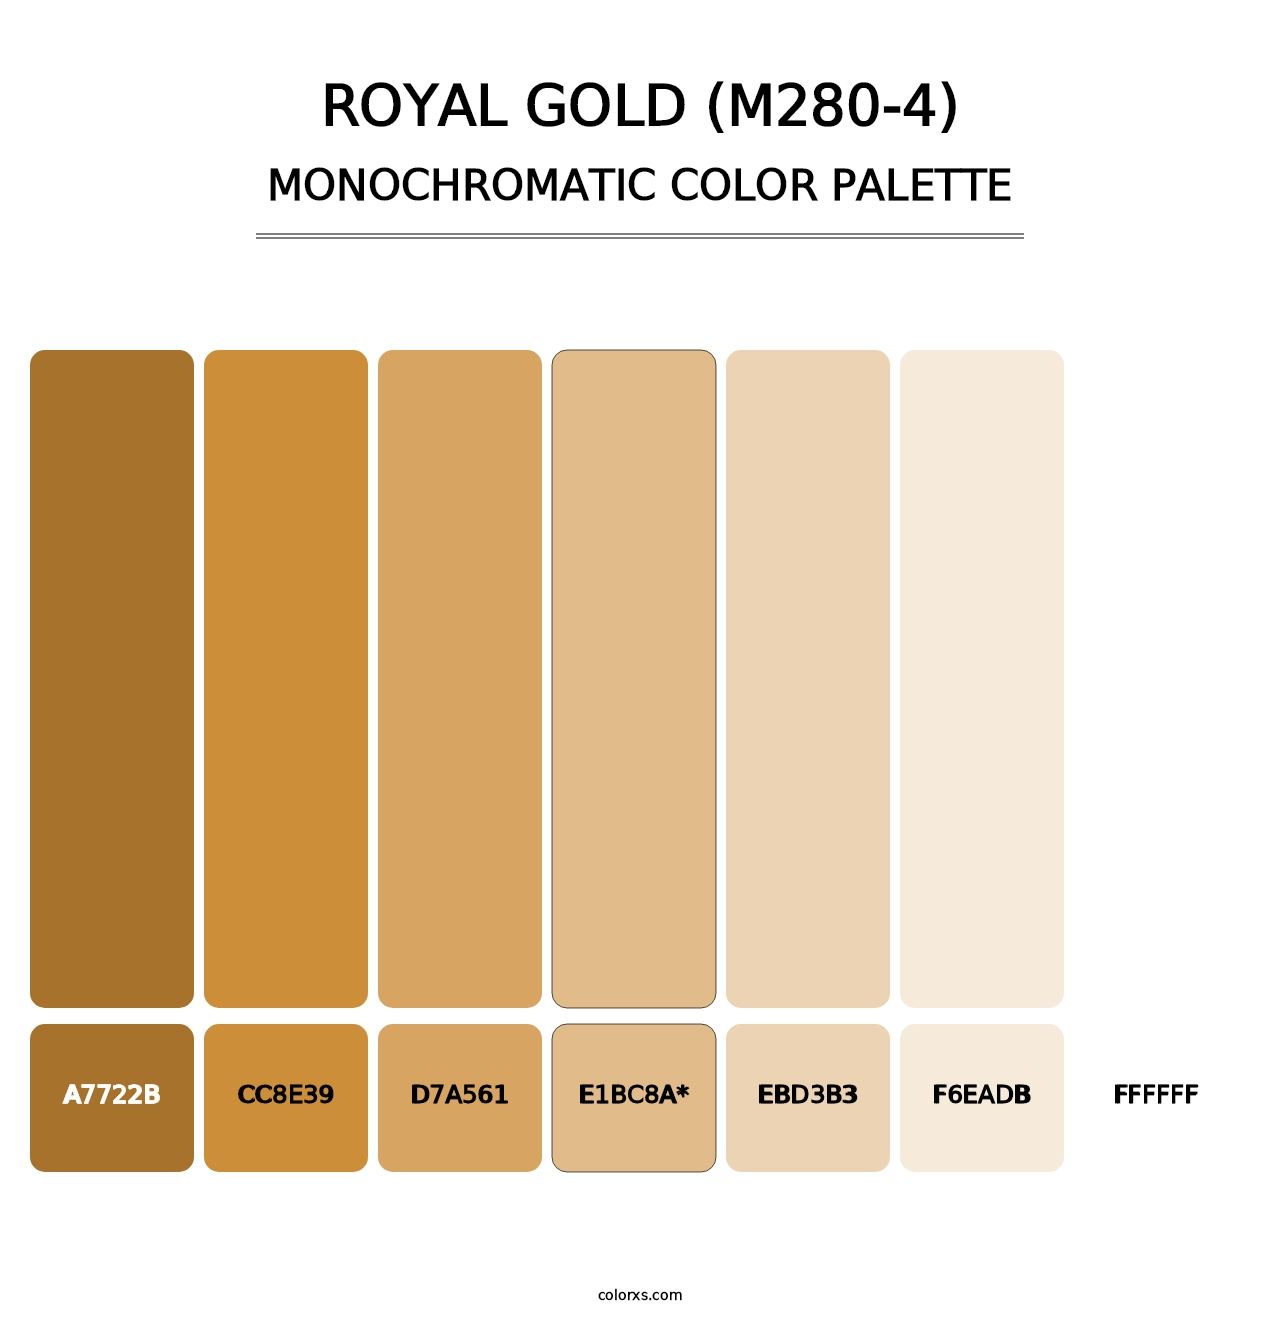 Royal Gold (M280-4) - Monochromatic Color Palette